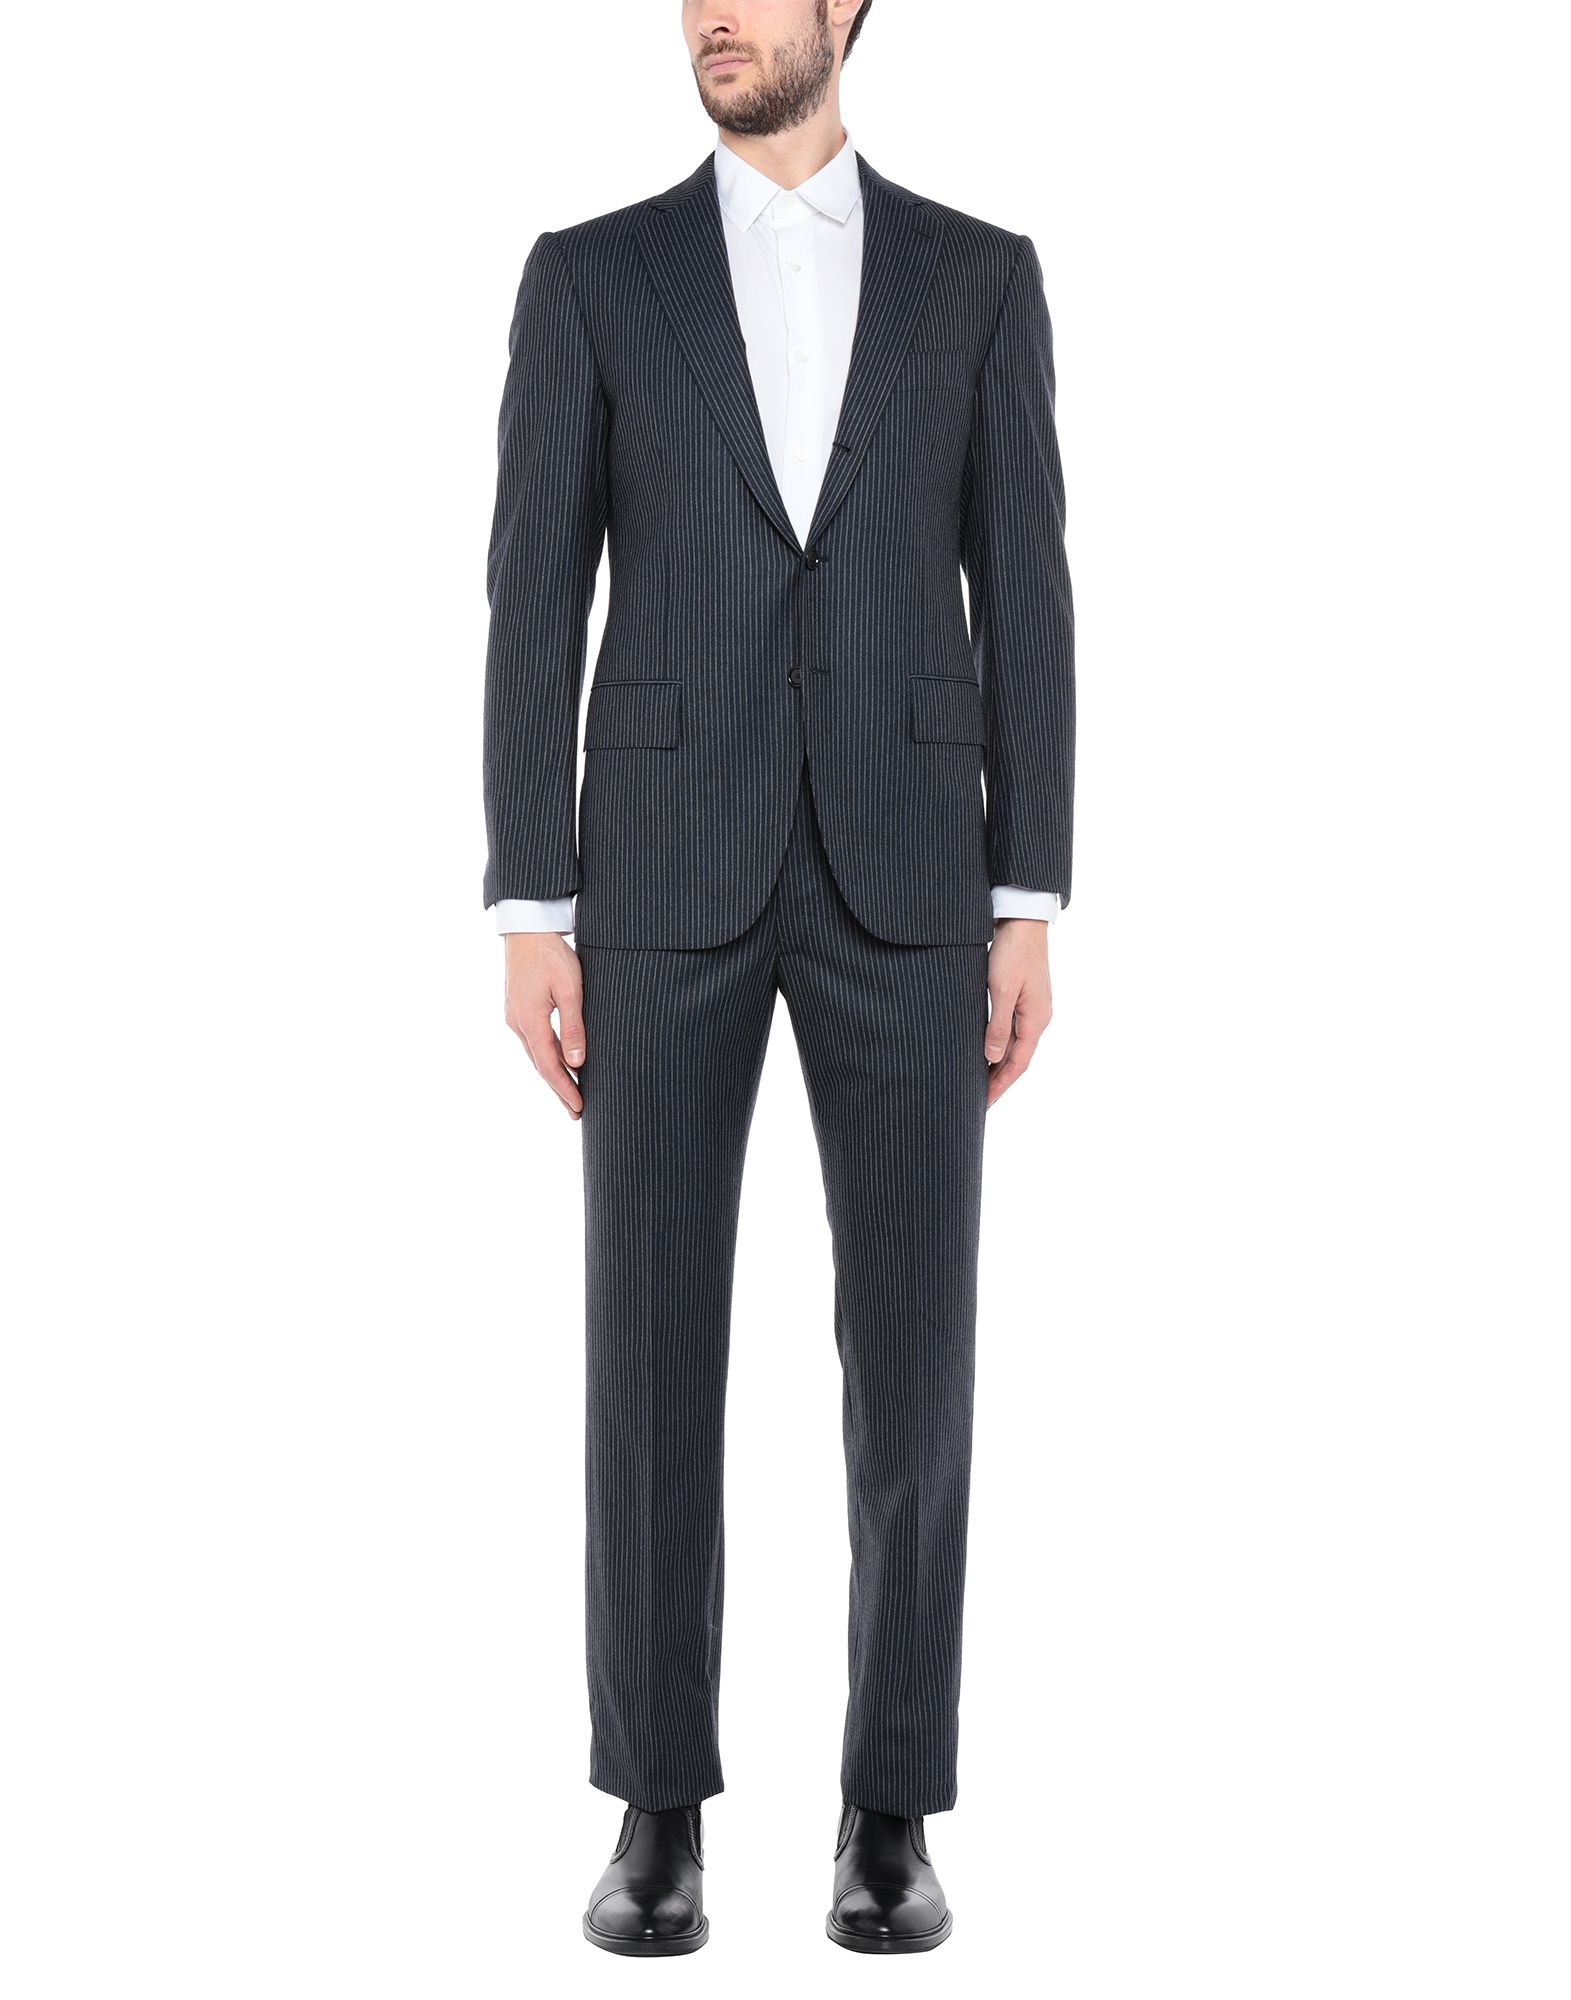 《送料無料》CESARE ATTOLINI メンズ スーツ ブルーグレー 48 スーパー120 ウール 100%